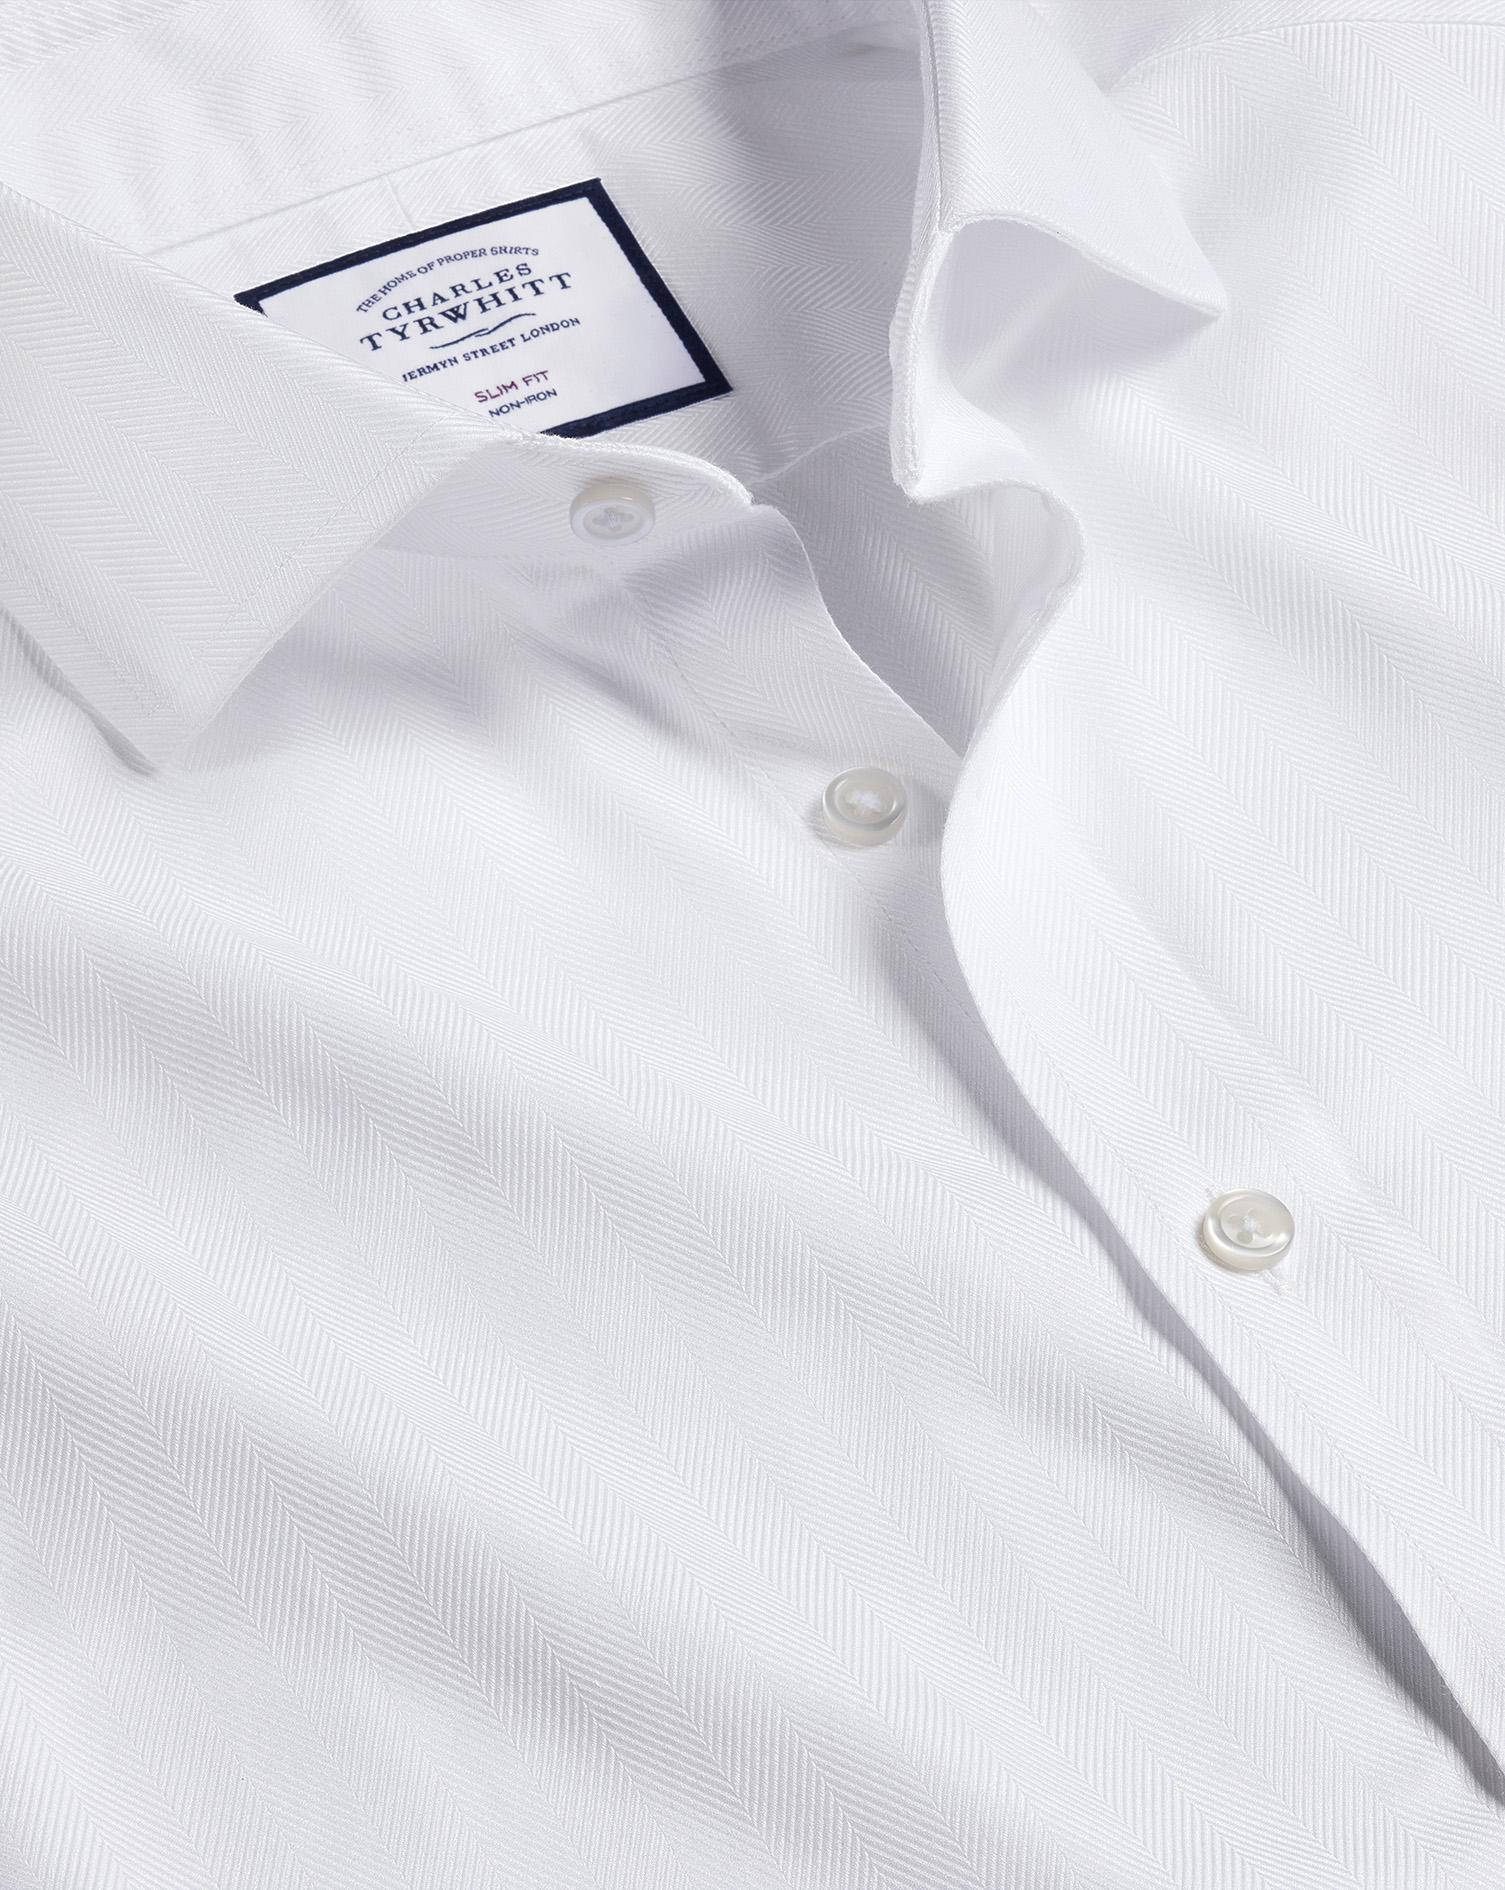 Charles Tyrwhitt Cutaway Collar Non-iron Herringbone Cotton Dress Shirt In White